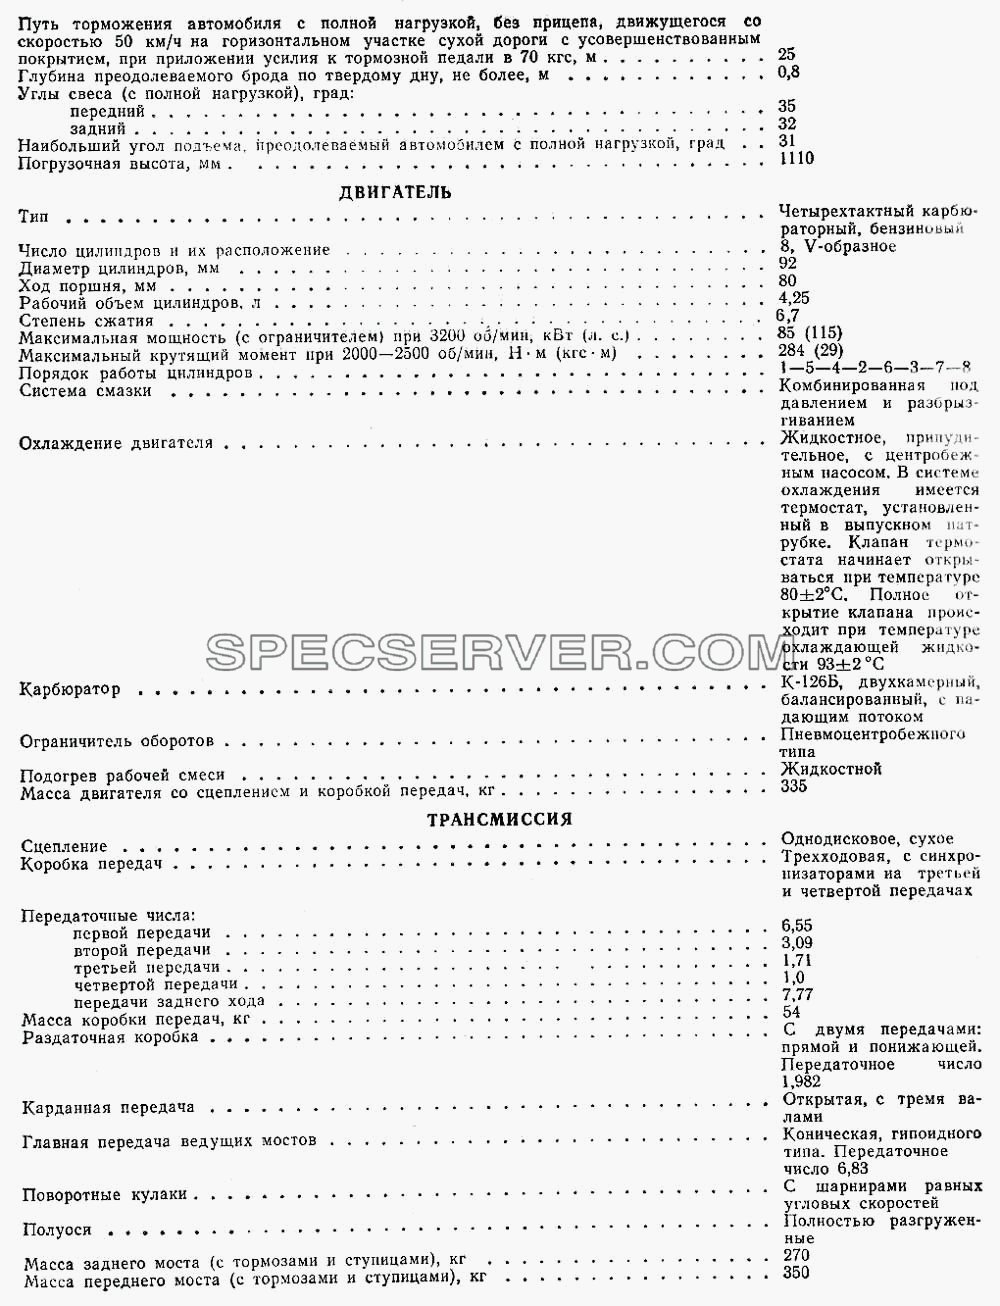 Лист 2 для ГАЗ-66 (Каталога 1983 г.) (список запасных частей)